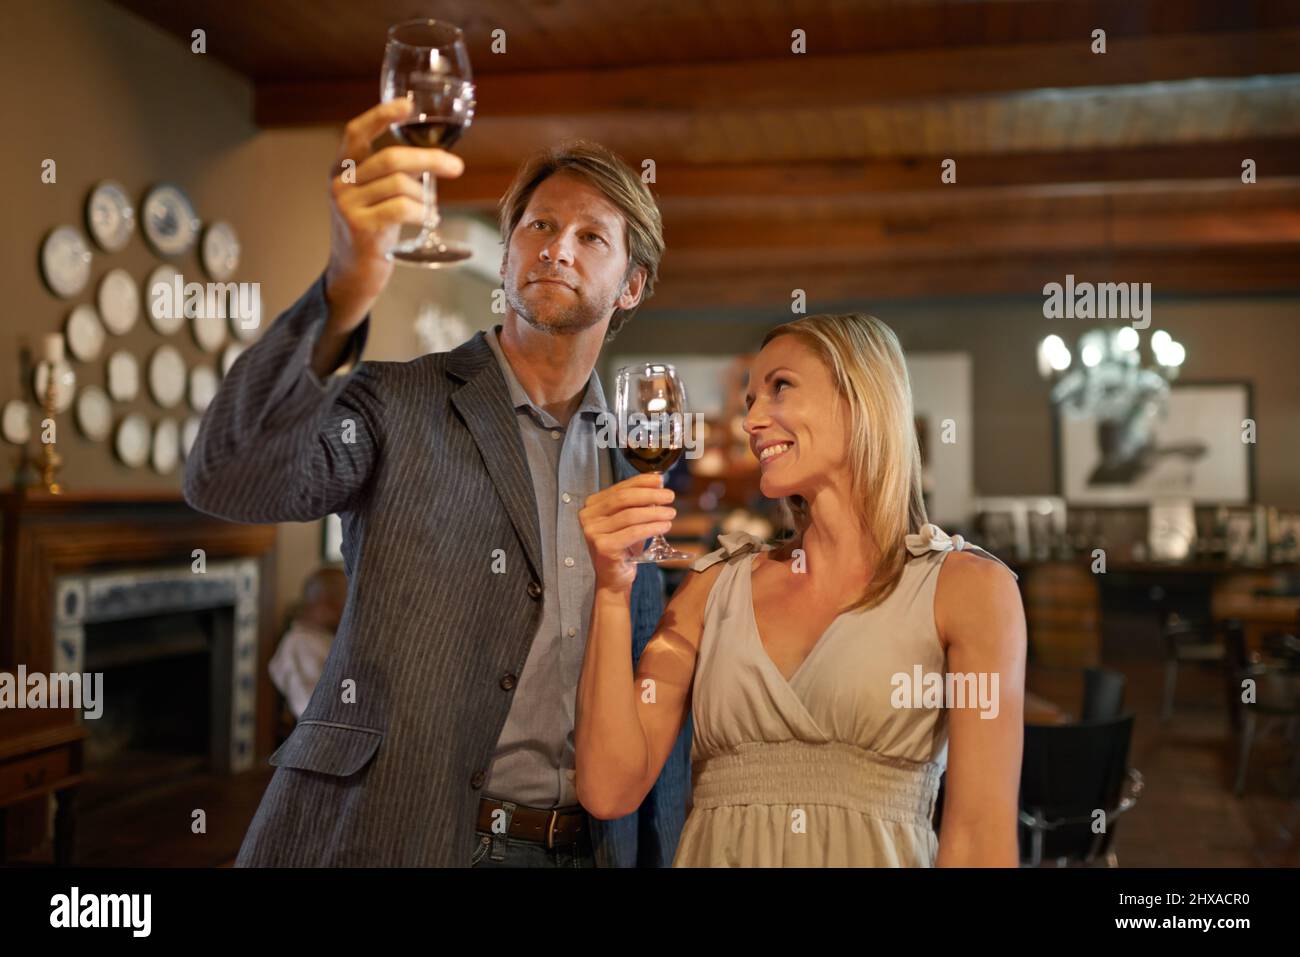 Apprécier les choses les plus fines de la vie Un couple heureux faisant une dégustation de vin dans un restaurant. Banque D'Images